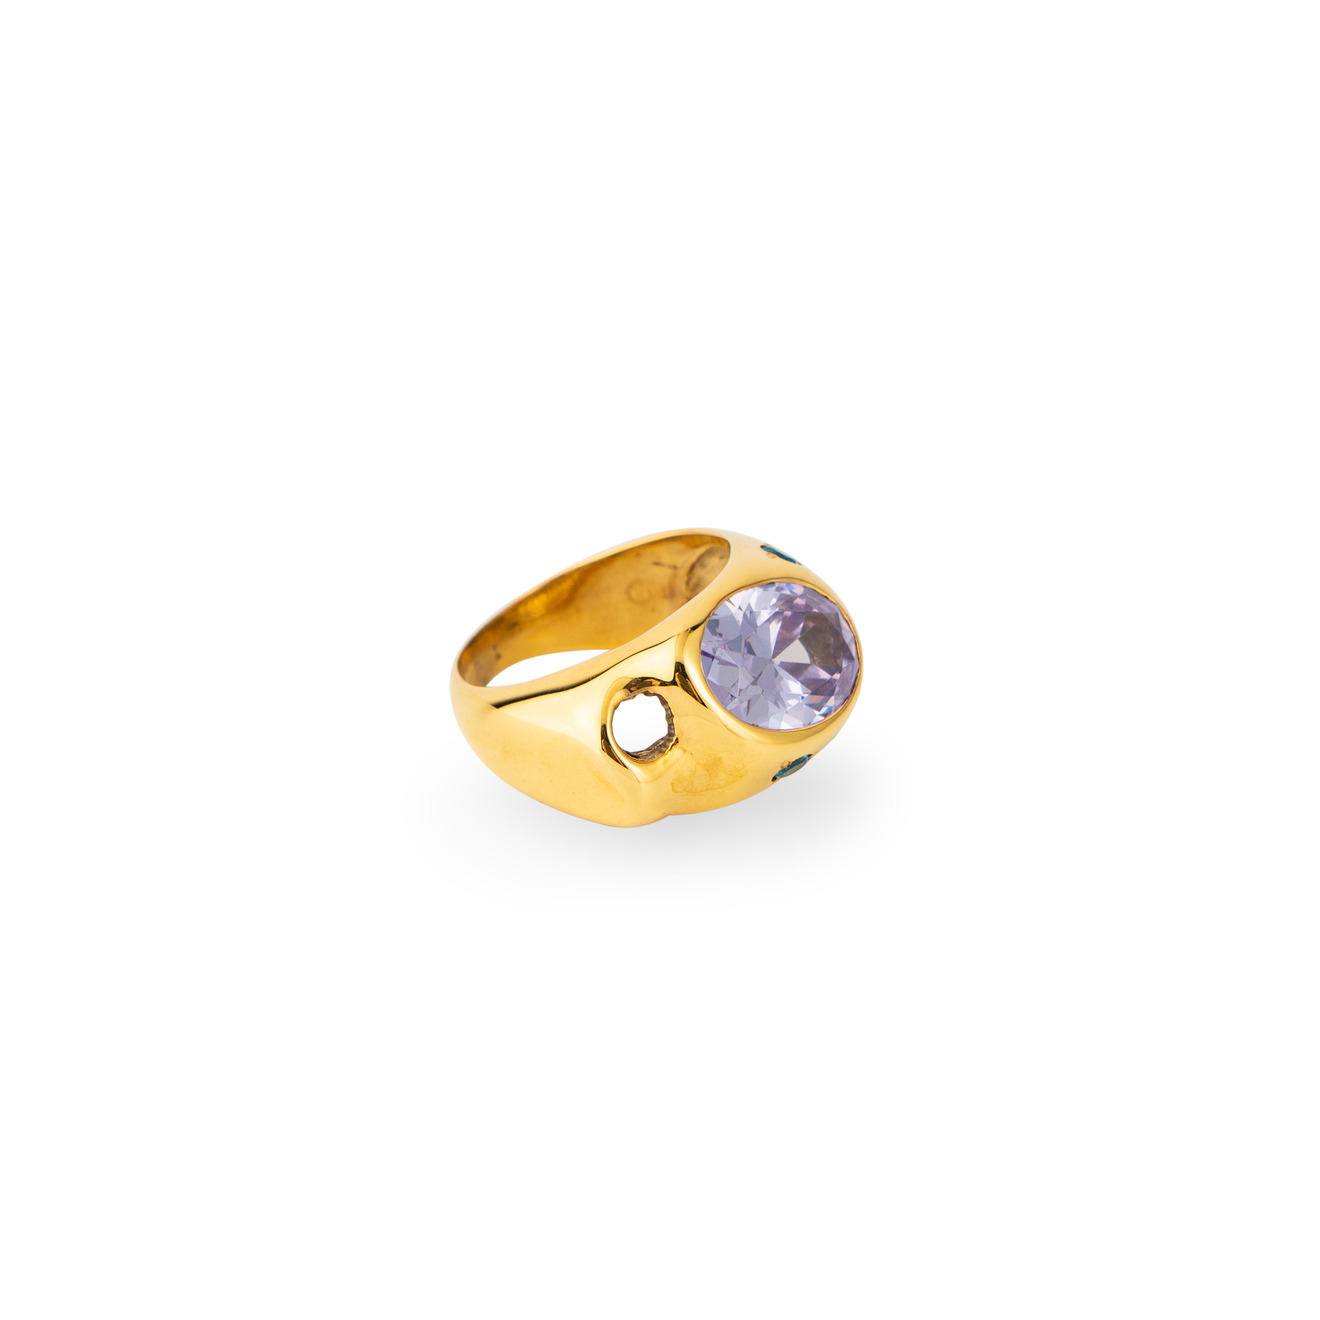 Janashia Золотистое кольцо Ava волнообразной формы со вставками из розово-голубых кристаллов janashia серебристые серьги bella изогнутой офрмы со вставками из цветных фианитав